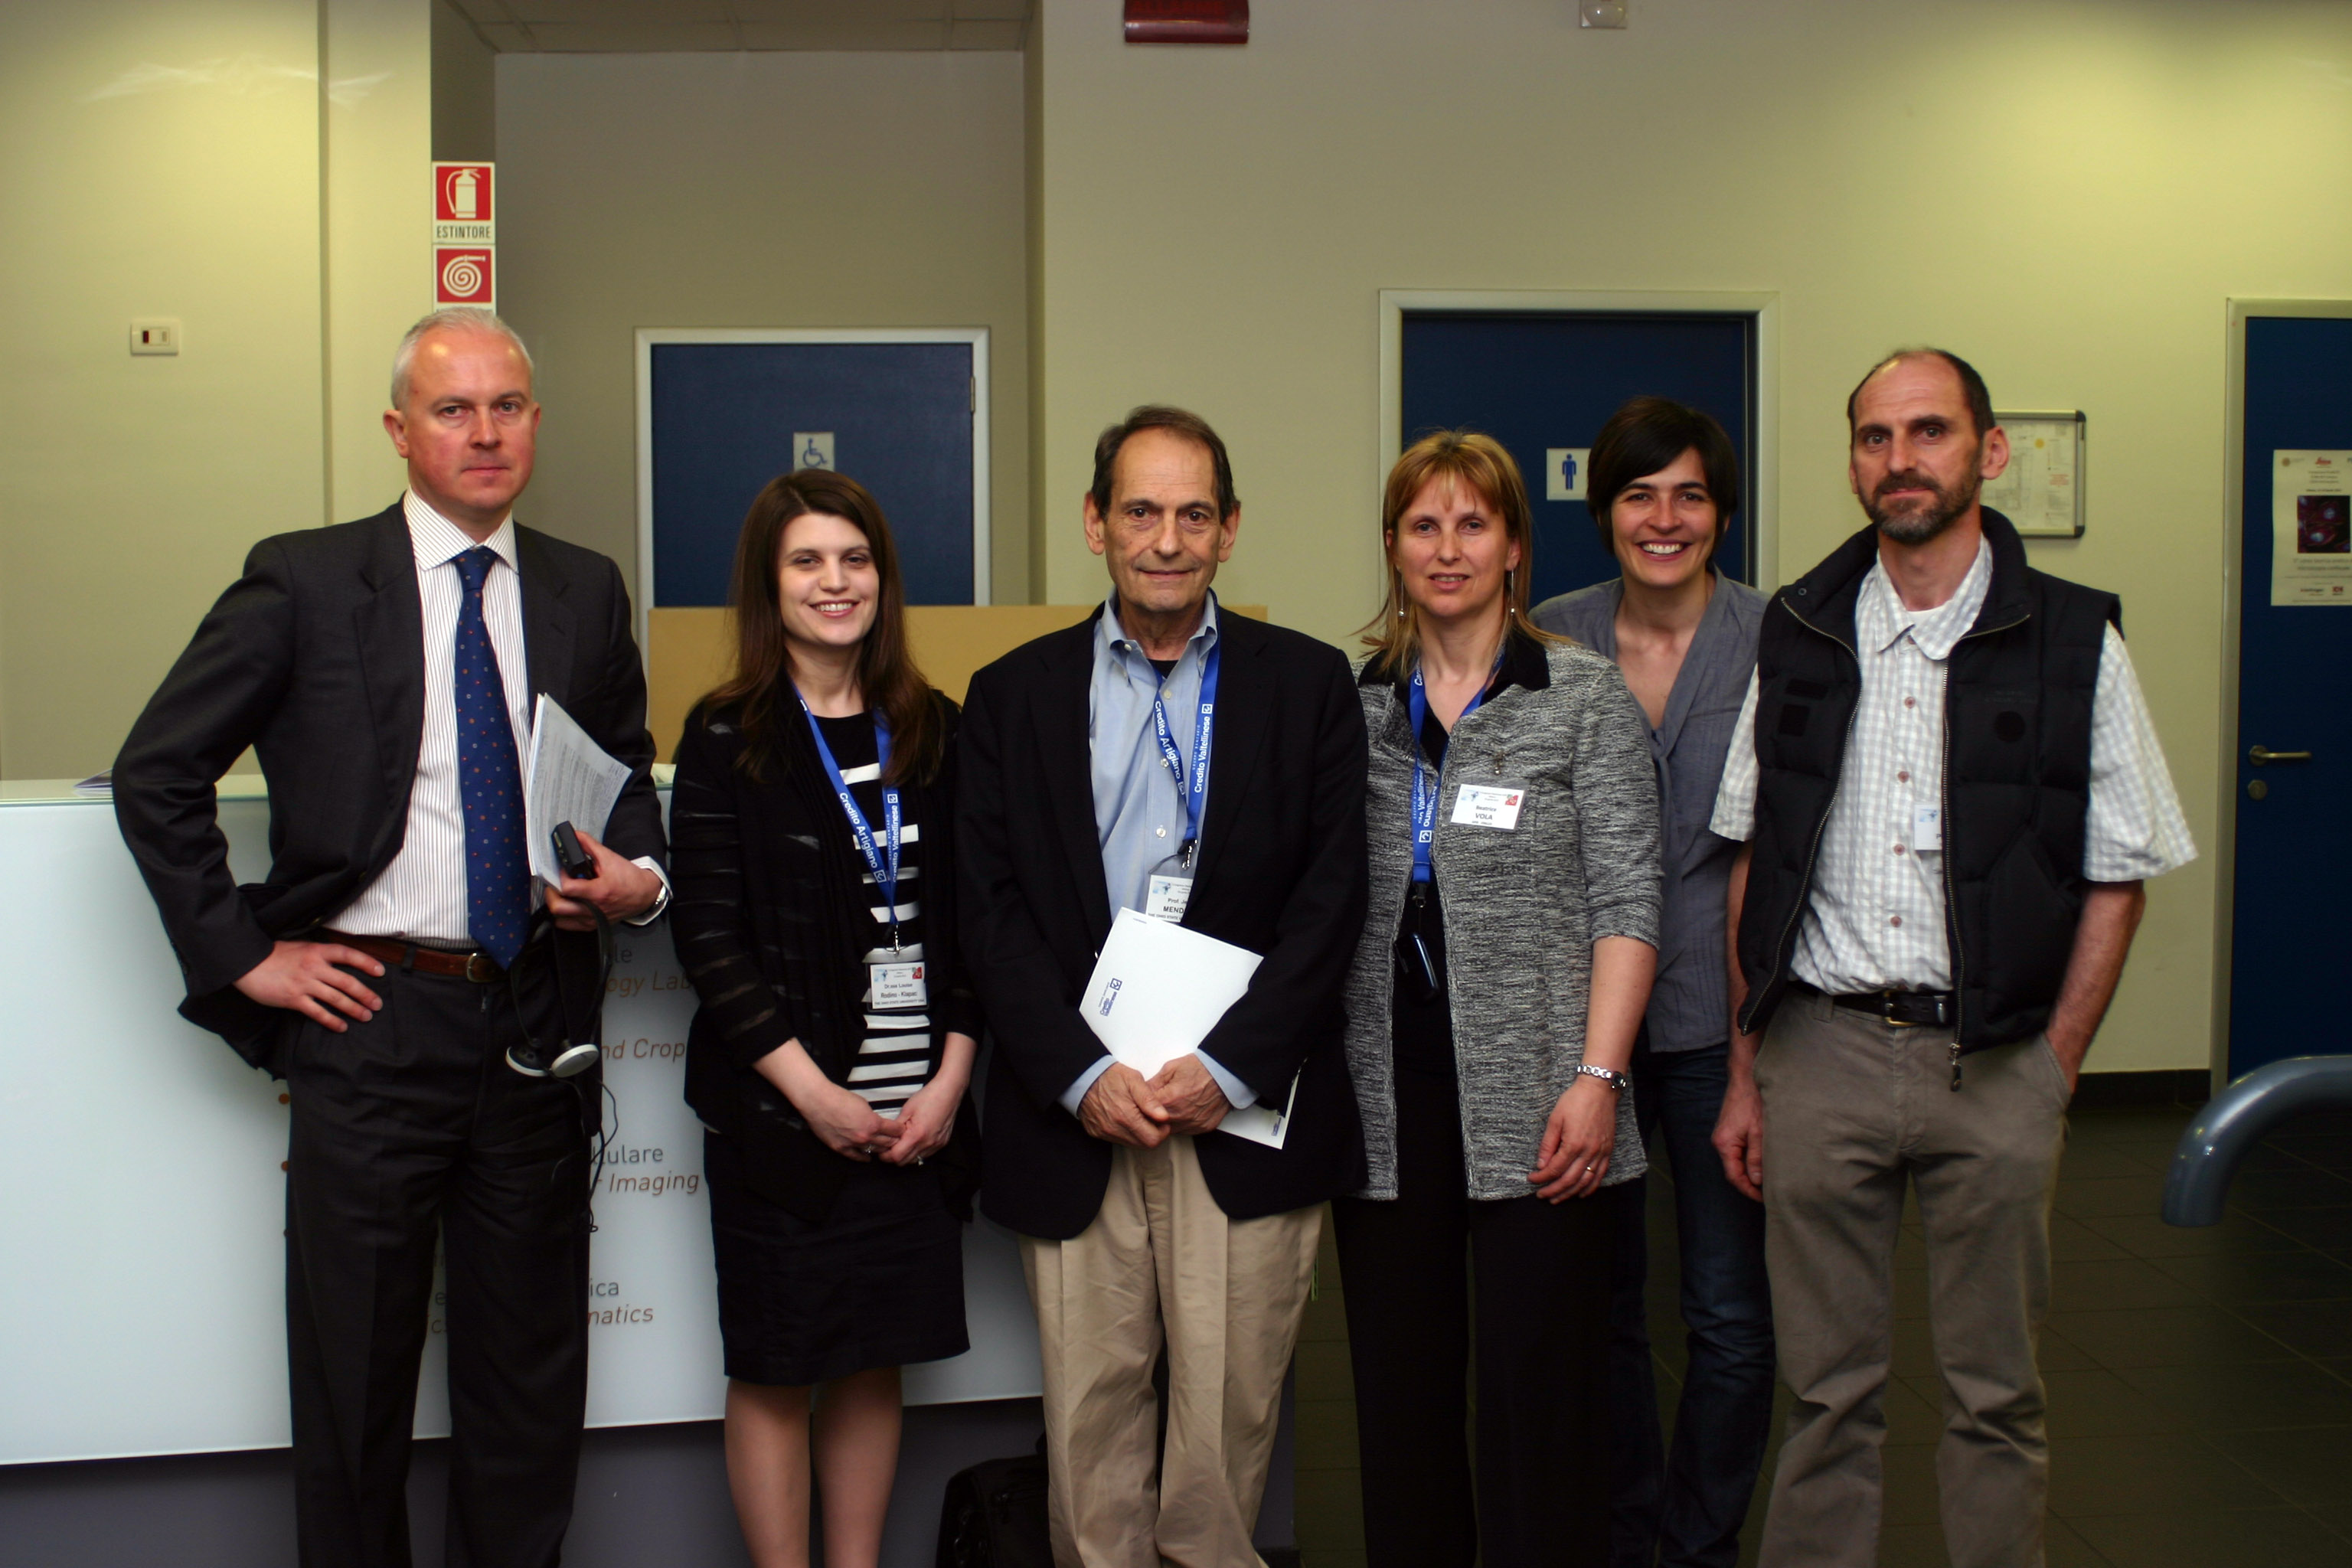 Da sinistra: A. Gonnella (membro GFB), L. Rodino Klapac (collaboratrice dott. Mendell), J. Mendell, B. Vola (presidente GFB), P. Bonetti (commissione medico-scientifica GFB), M. Perlini (vicepresidente GFB)